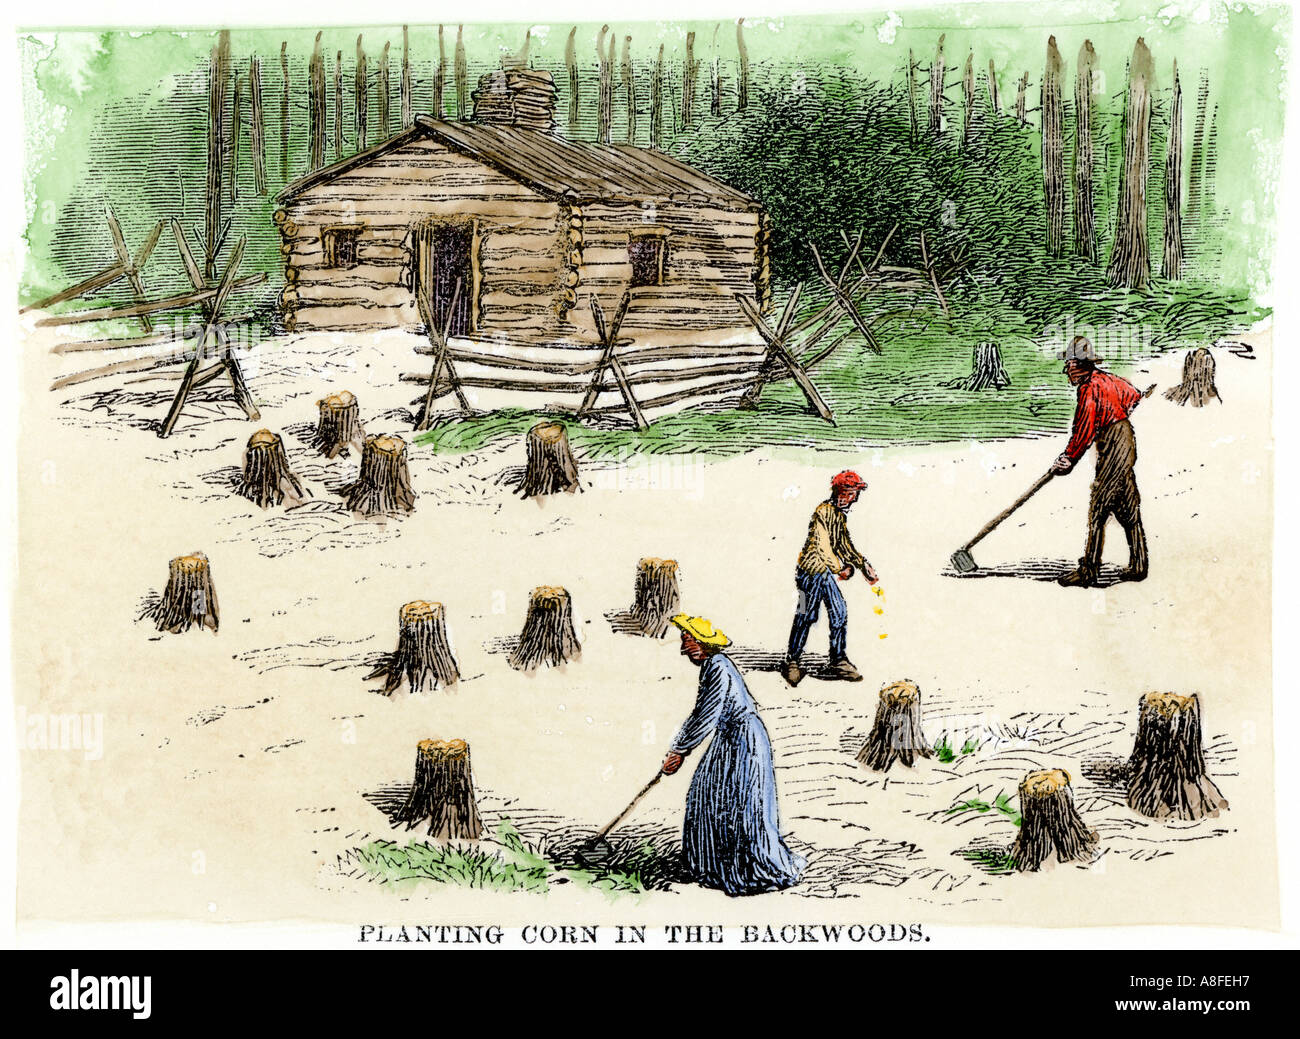 La plantation des pionniers du maïs sur des terres nouvellement défrichées dans le fond. À la main, gravure sur bois Banque D'Images